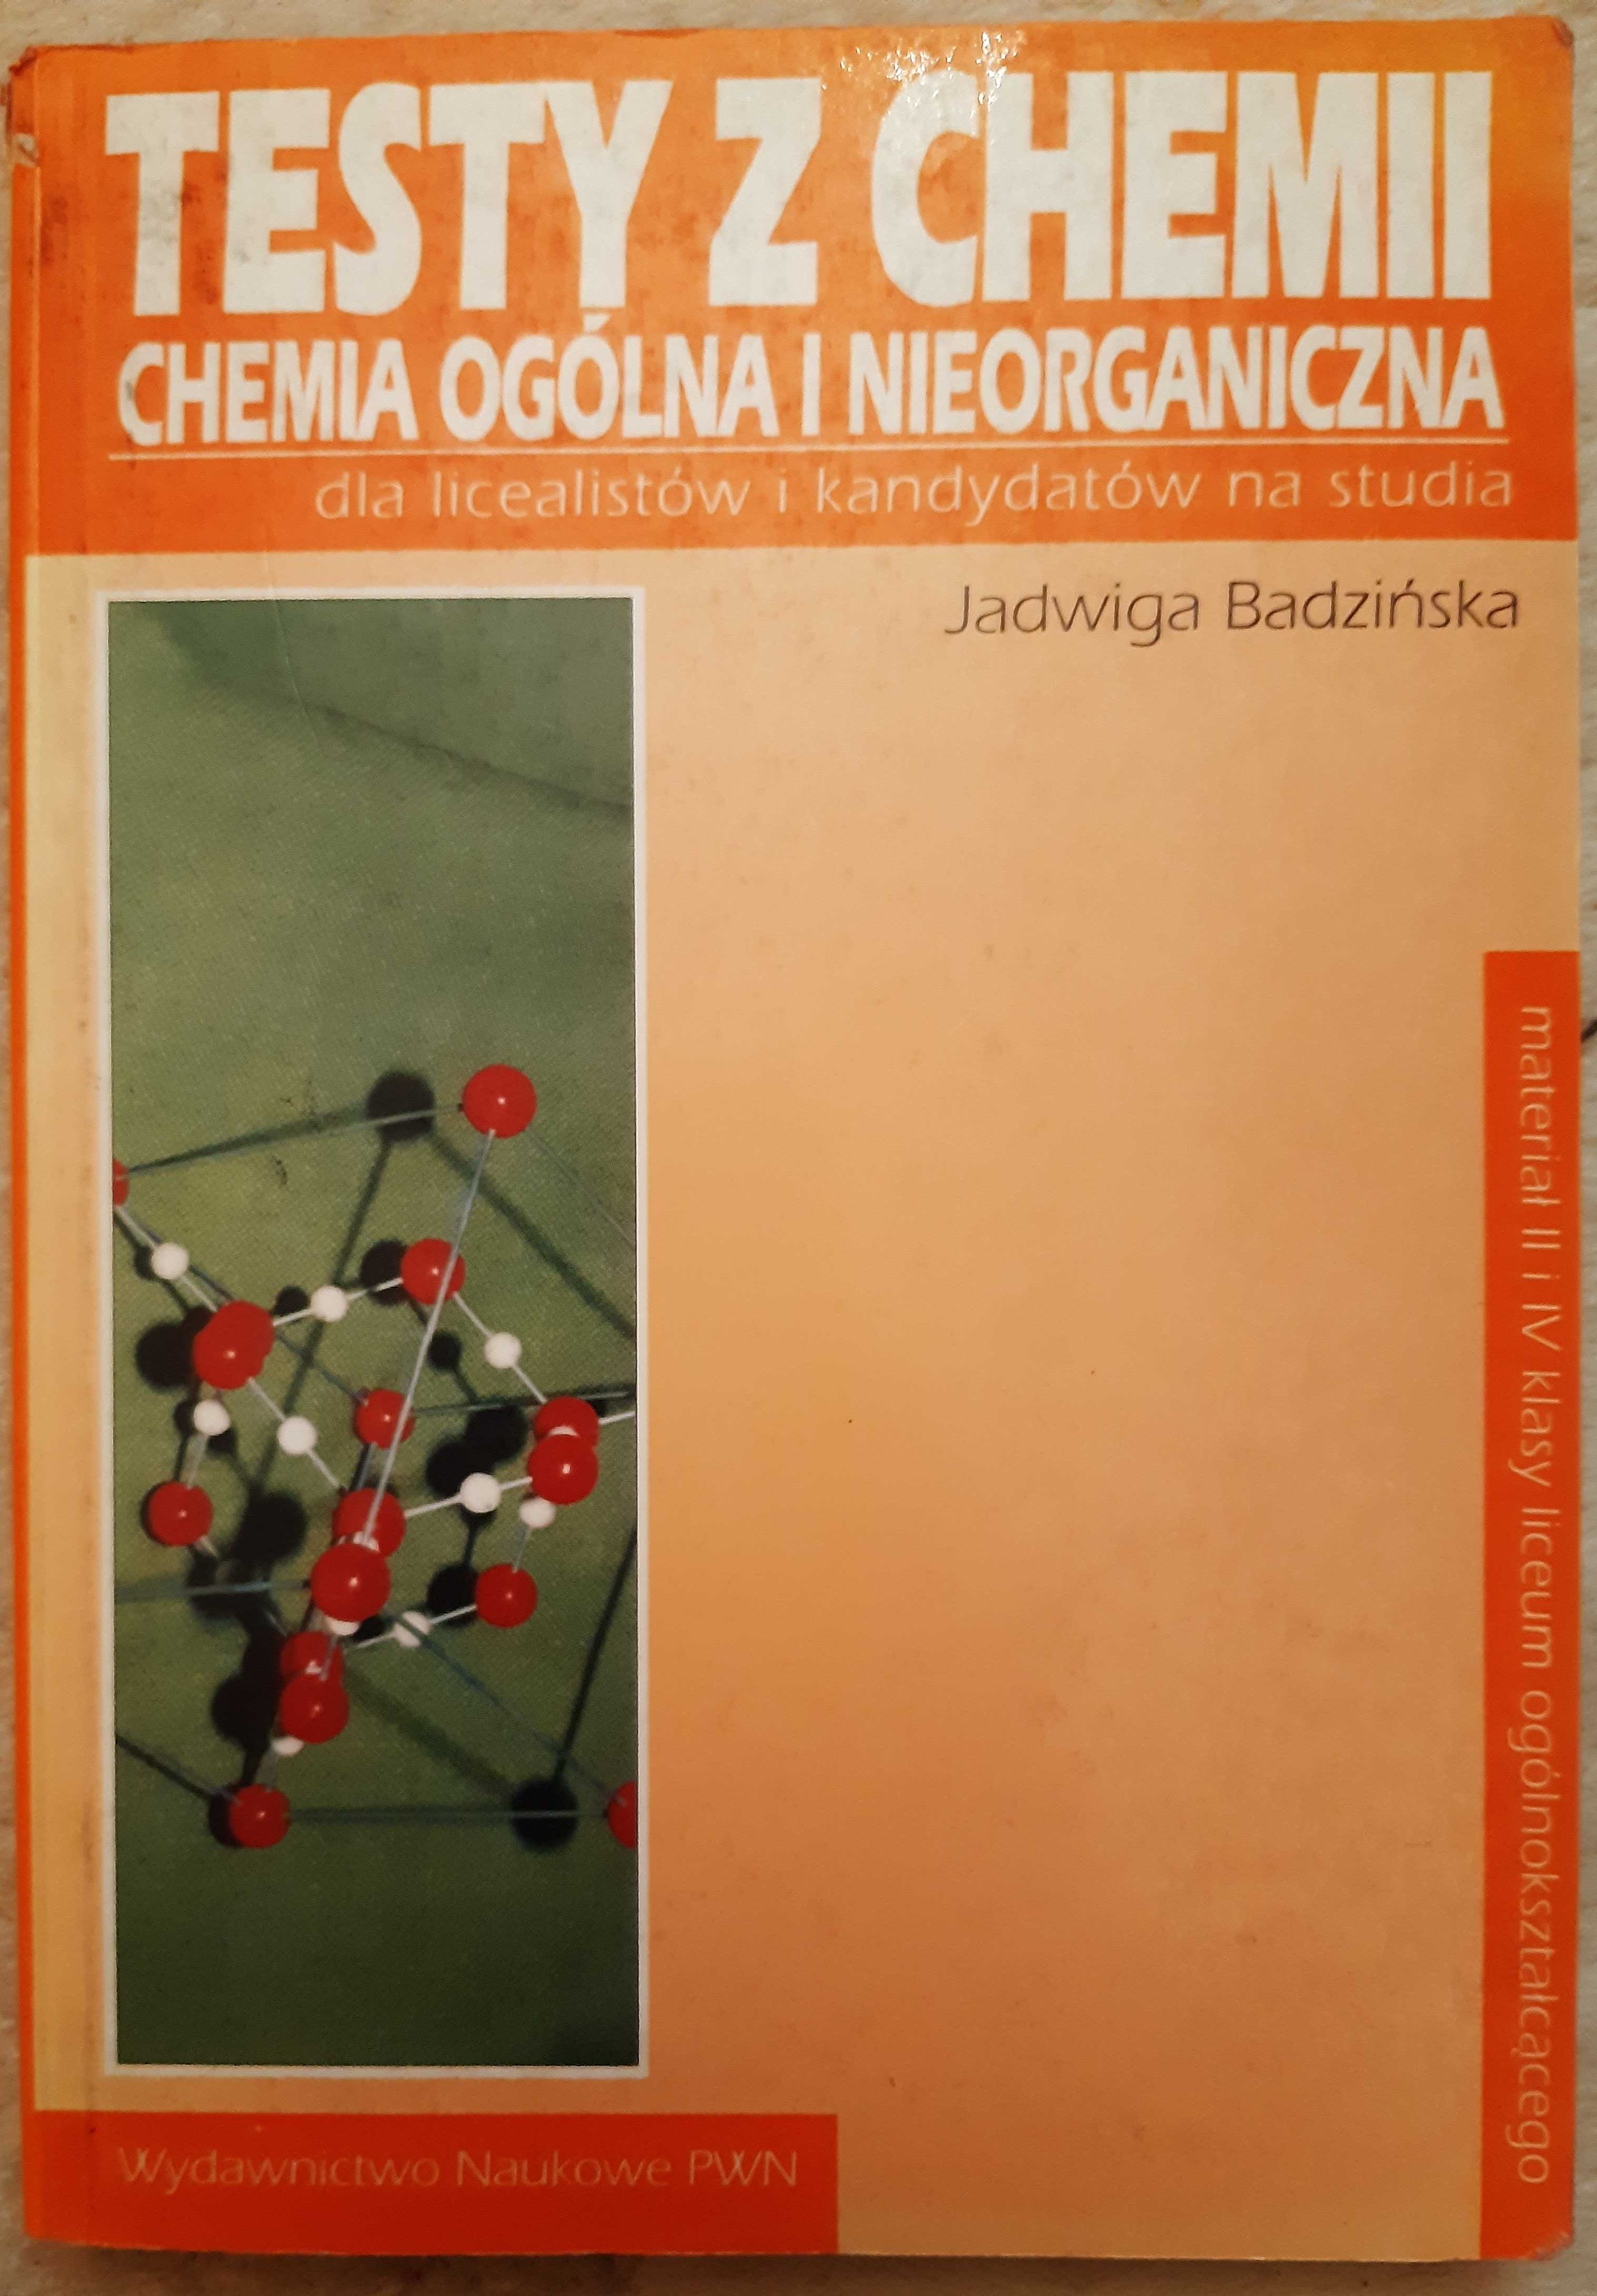 "Testy z chemii, chemia ogólna i nieorganiczna" Jadwiga Badzińska